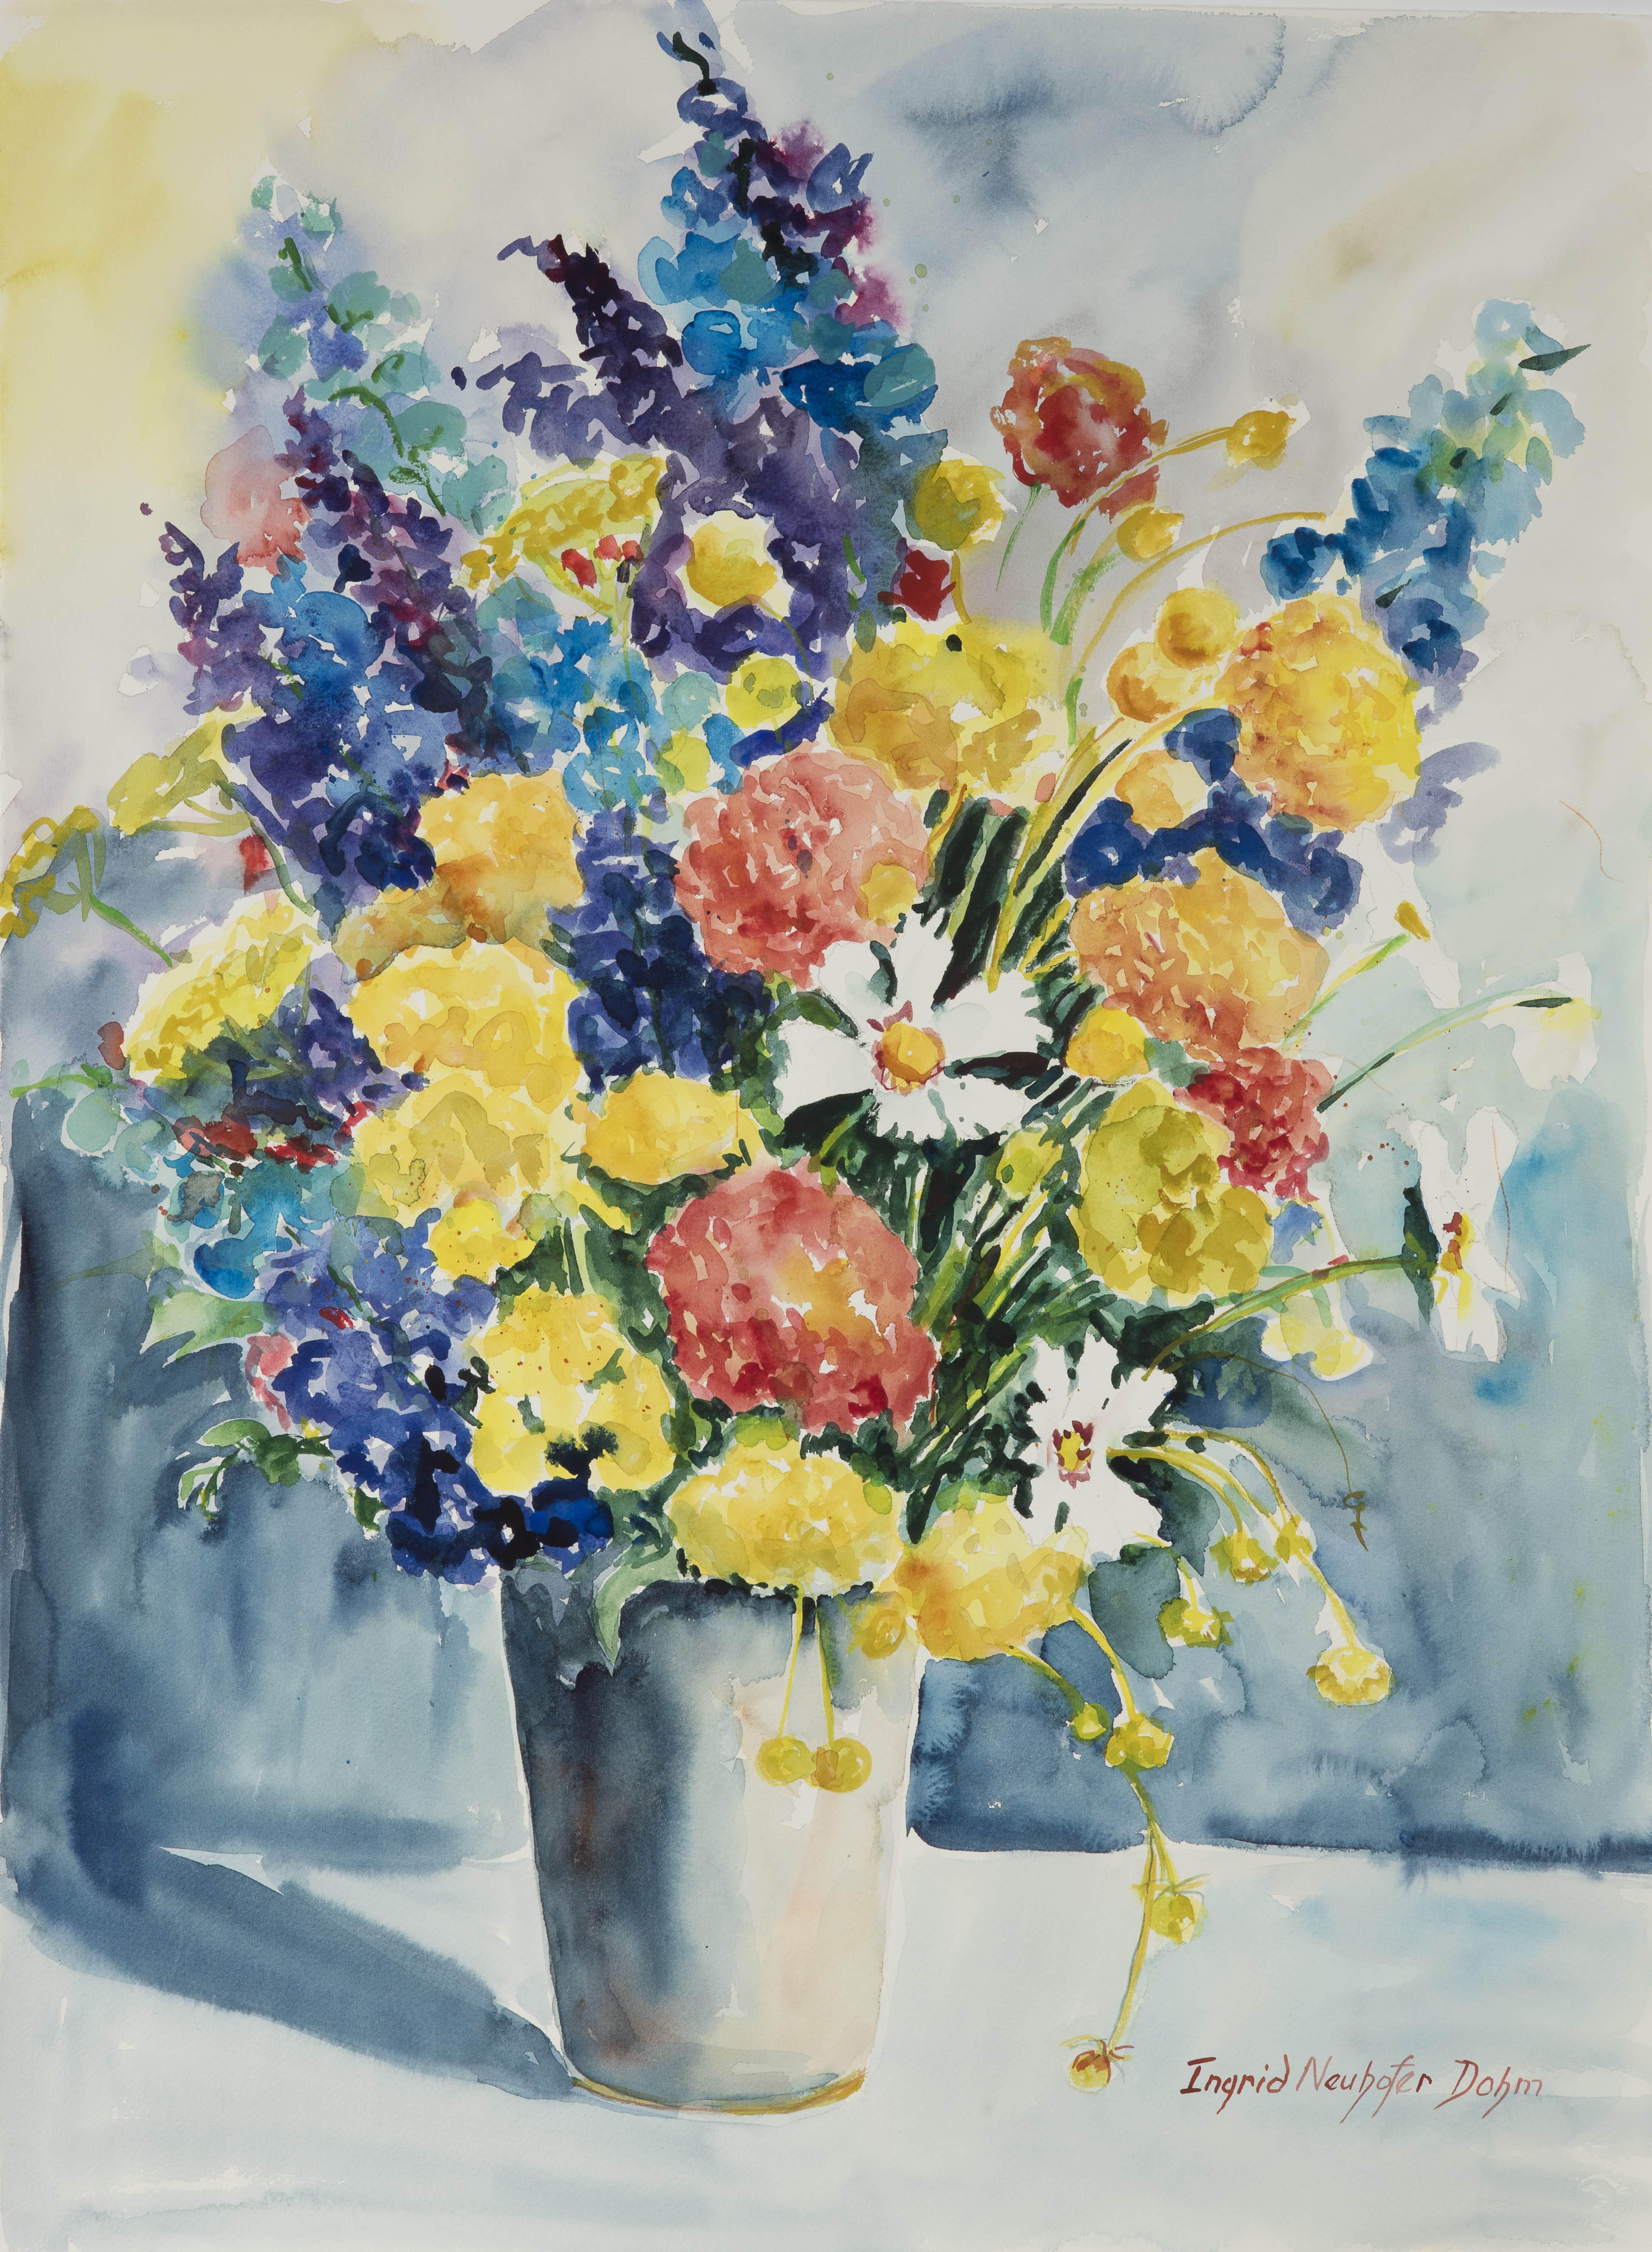 Floral Arrabgement, Original Watercolor Painting, 2017